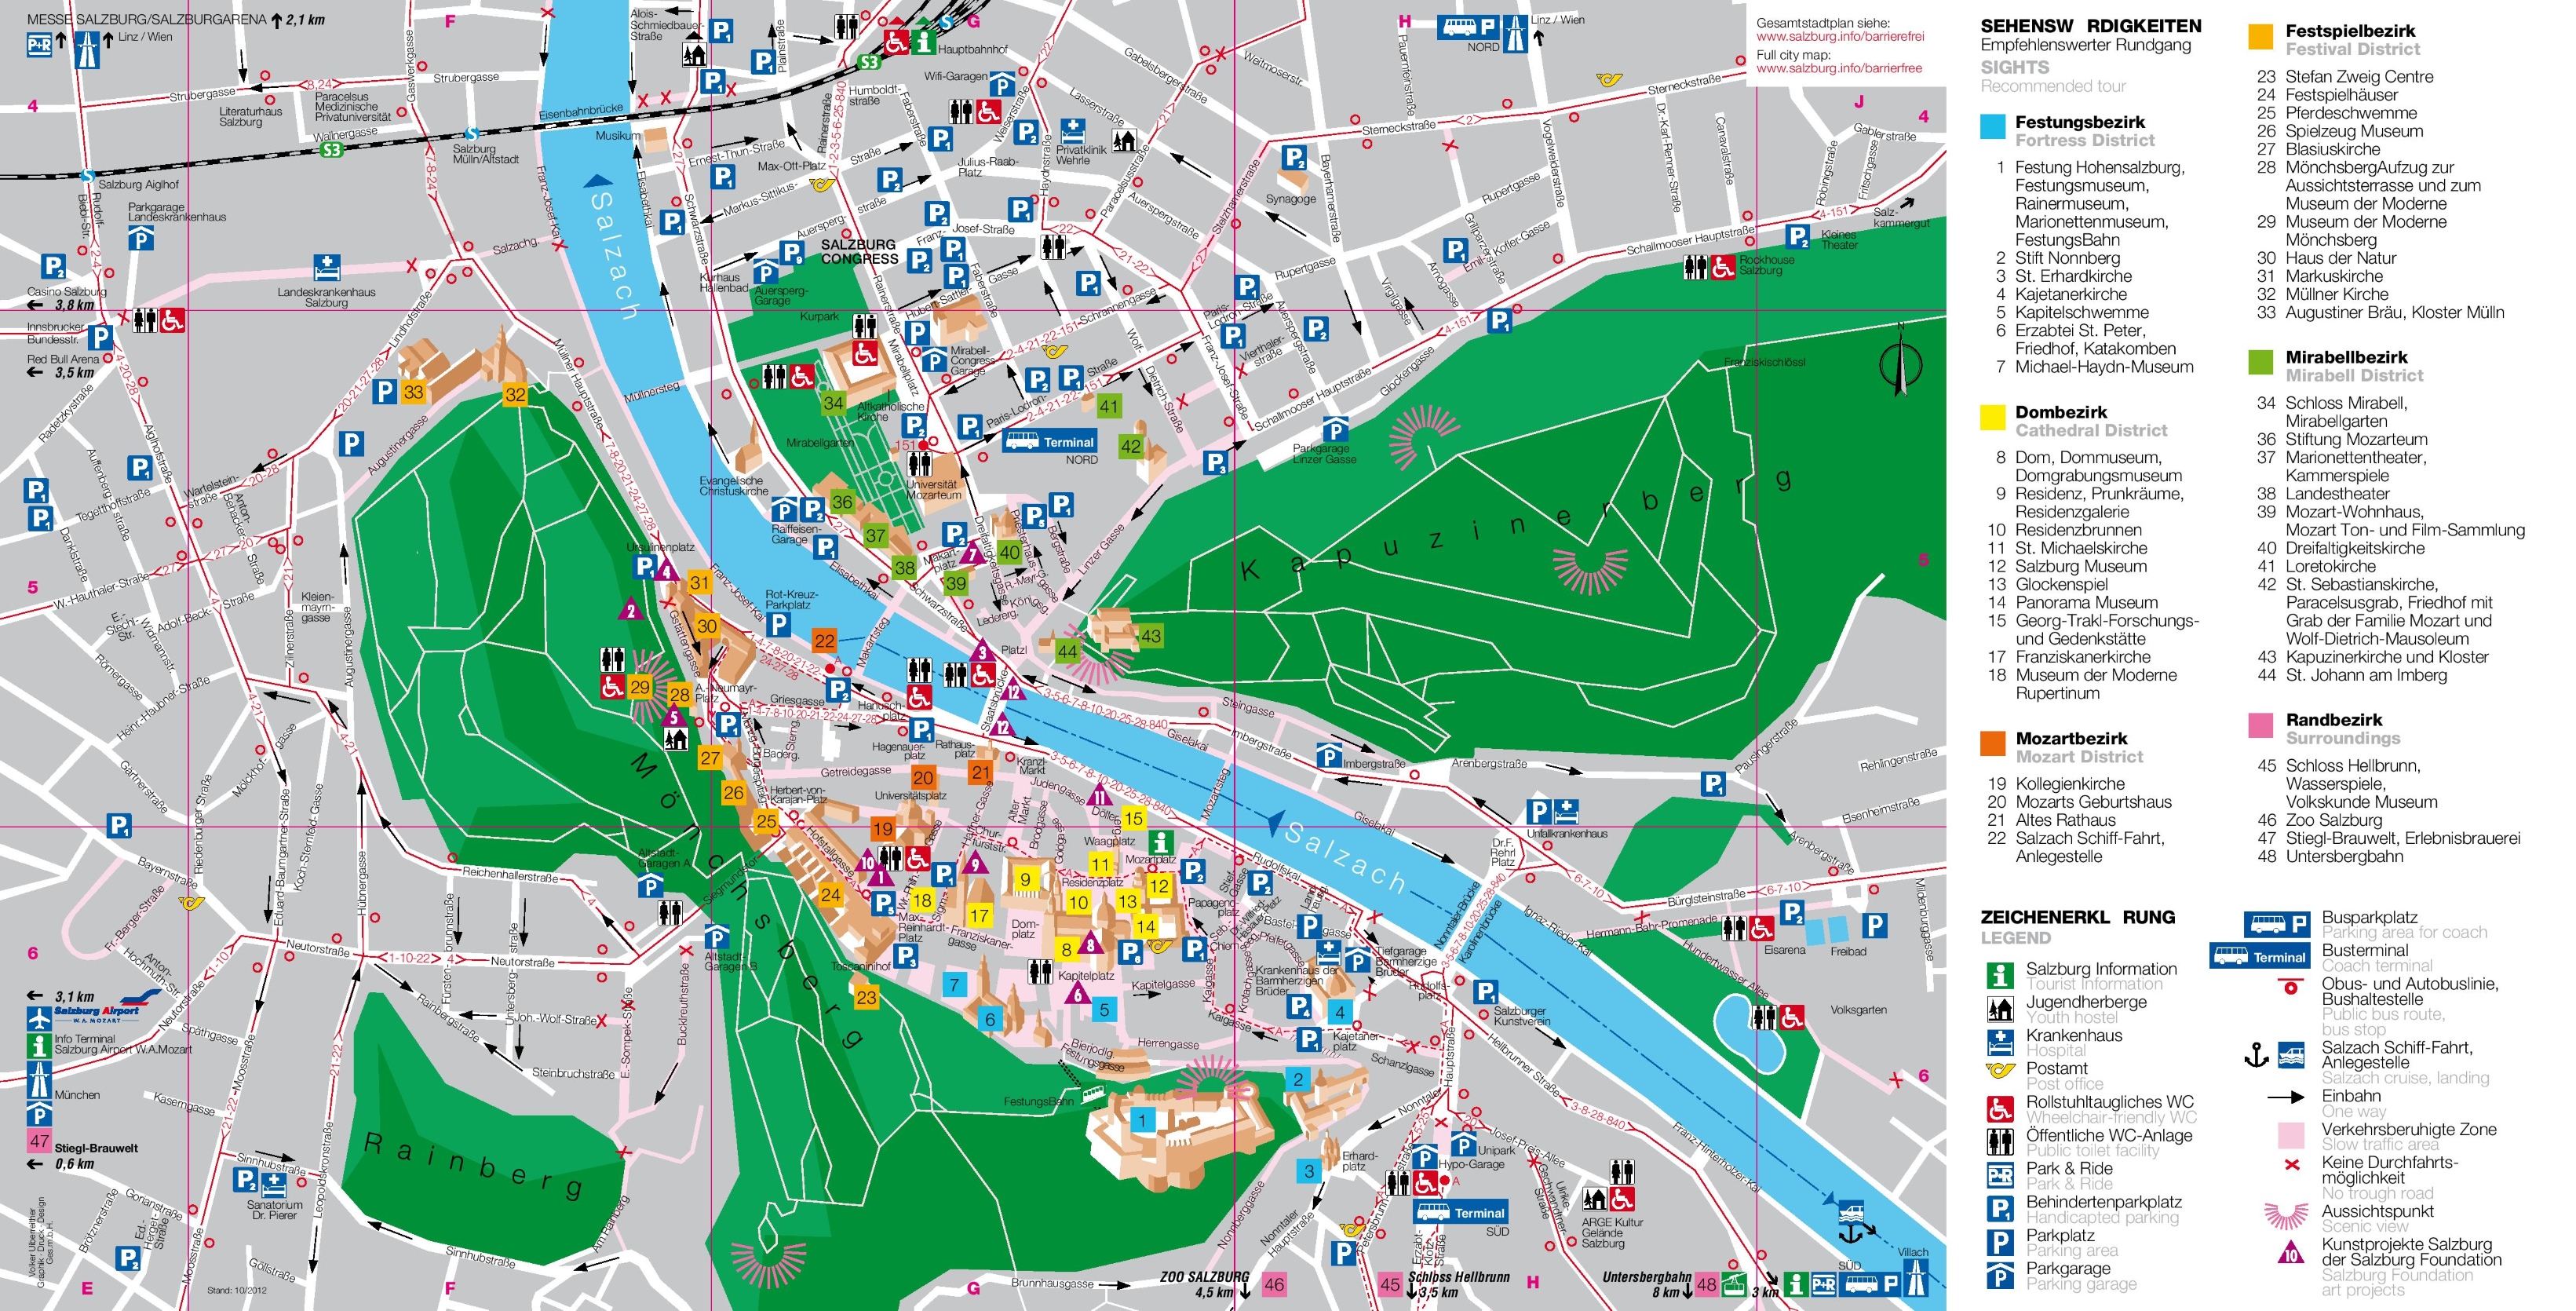 salzburg-tourist-map.jpg